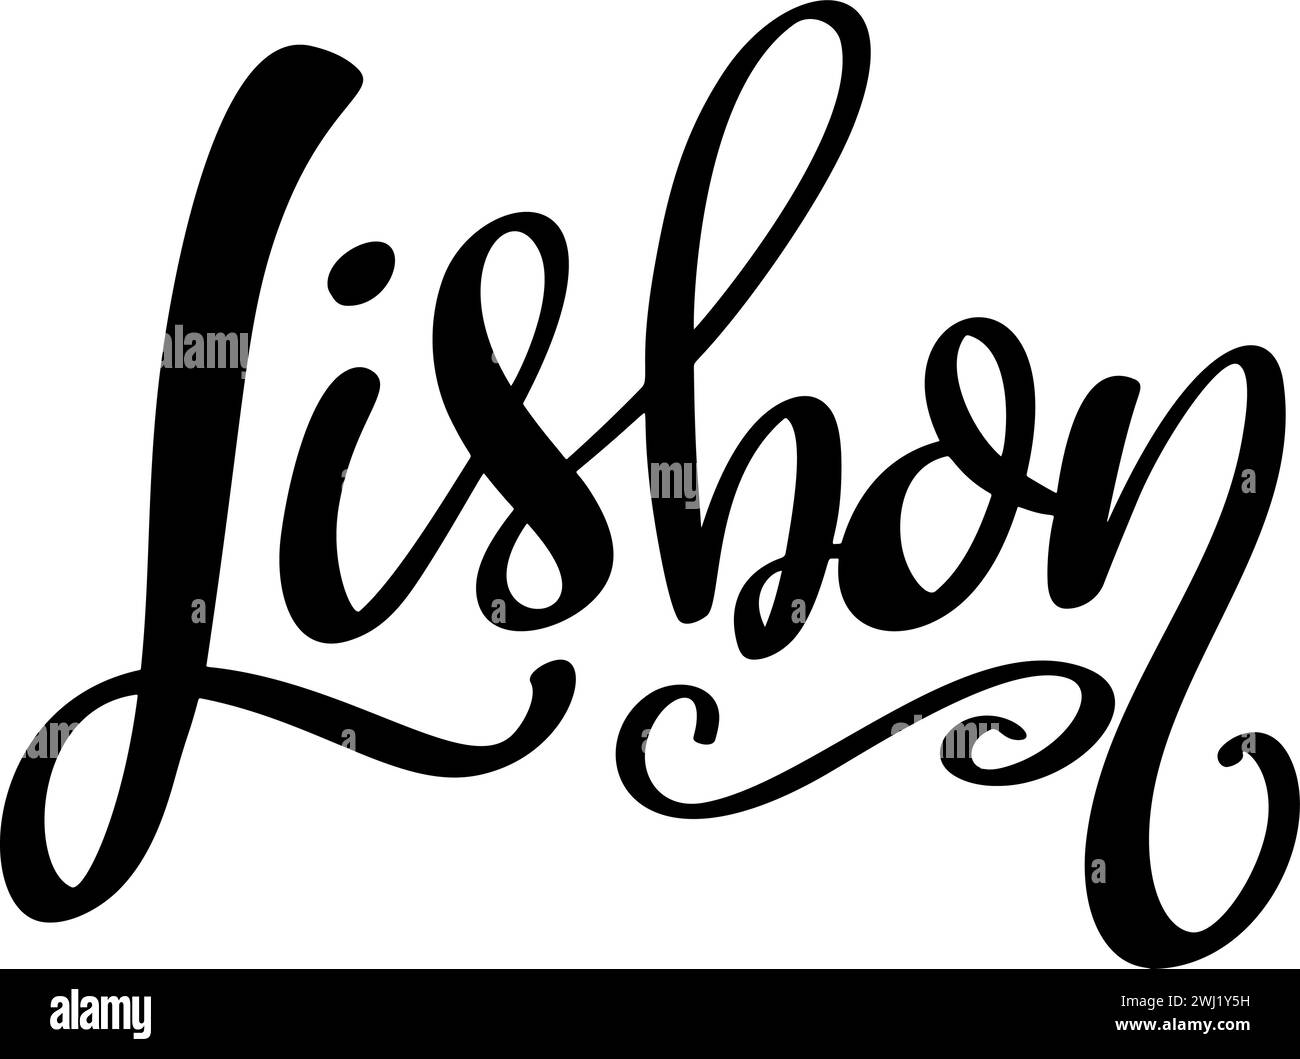 Lissabon, Handbuchstaben-Satz, Poster-Design, Kalligrafie Vektor-Illustration Stock Vektor